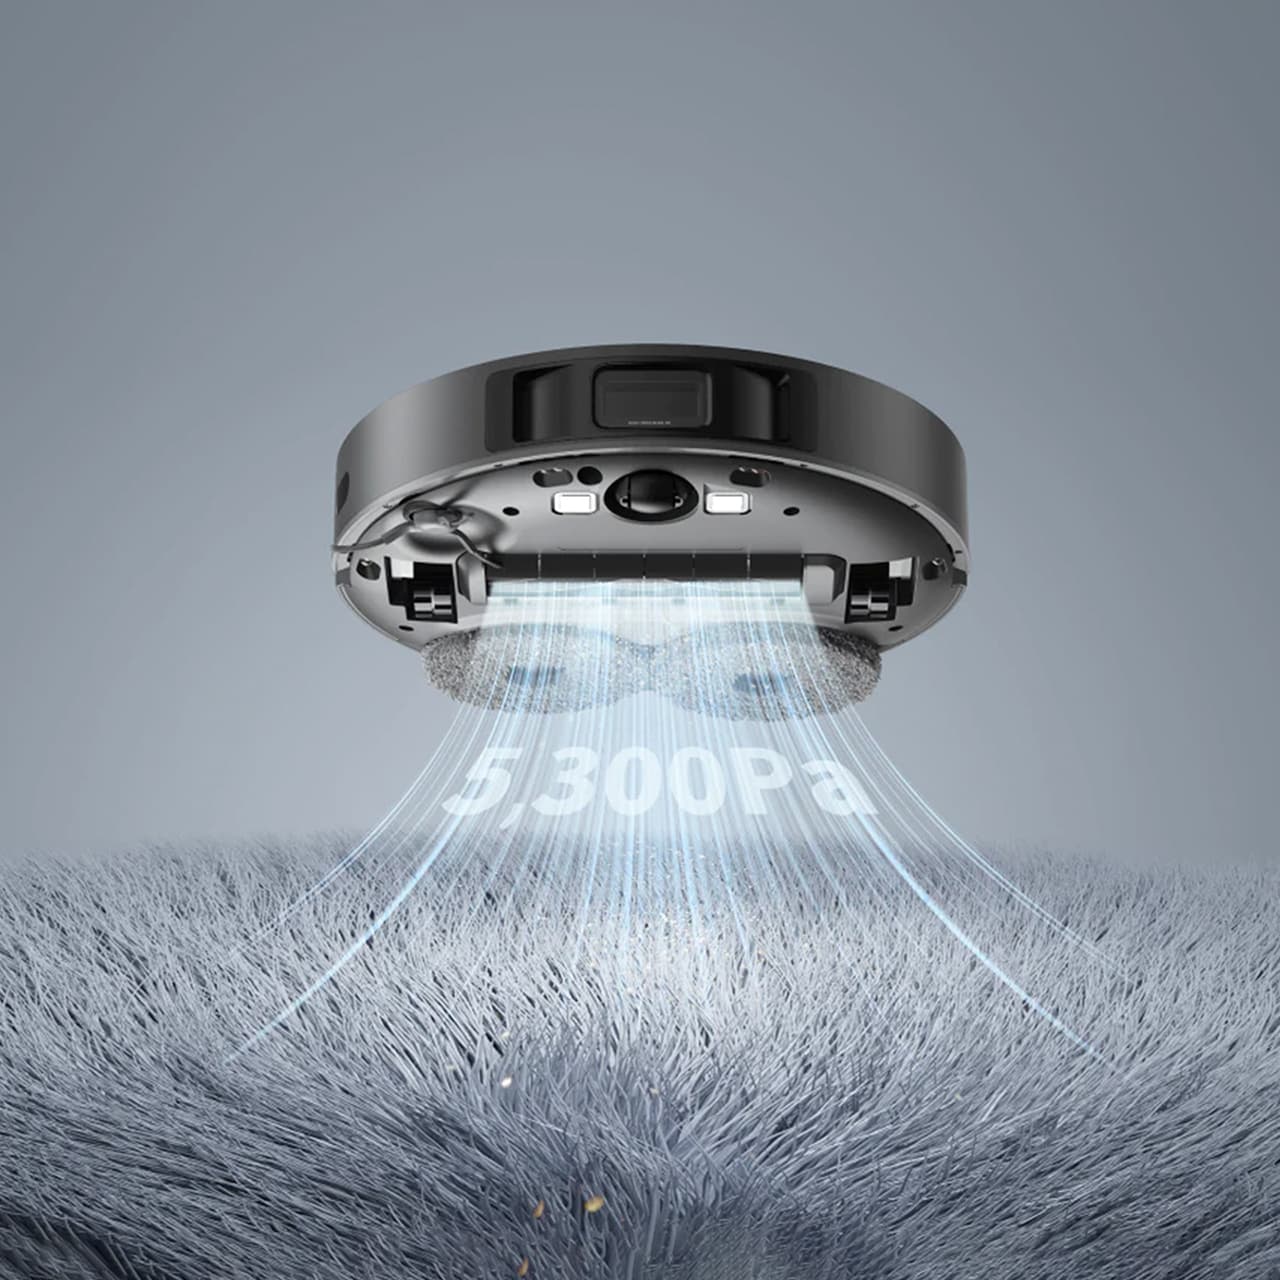 Dreame L10s Pro способен развить силу всасывания до 5300 Па и может проводить влажную уборку